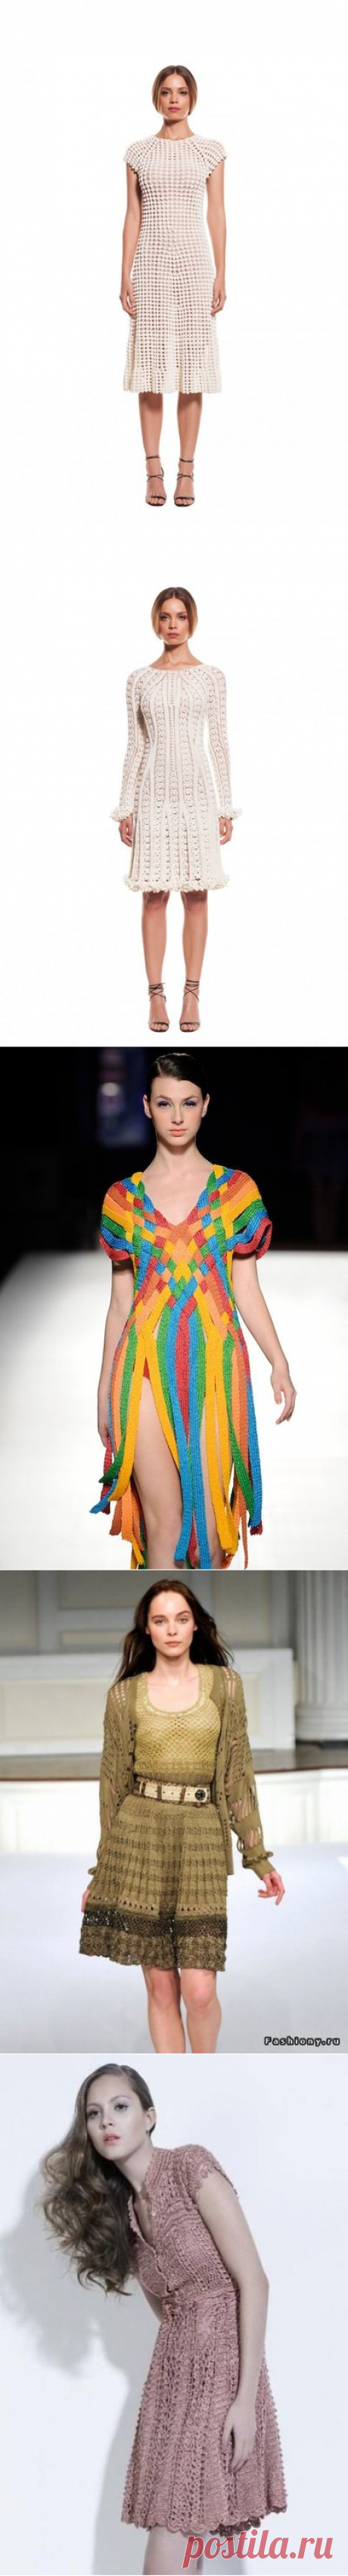 Вязаные платья с мировых подиумов: идеи для вдохновения | записки вязальщицы | Яндекс Дзен